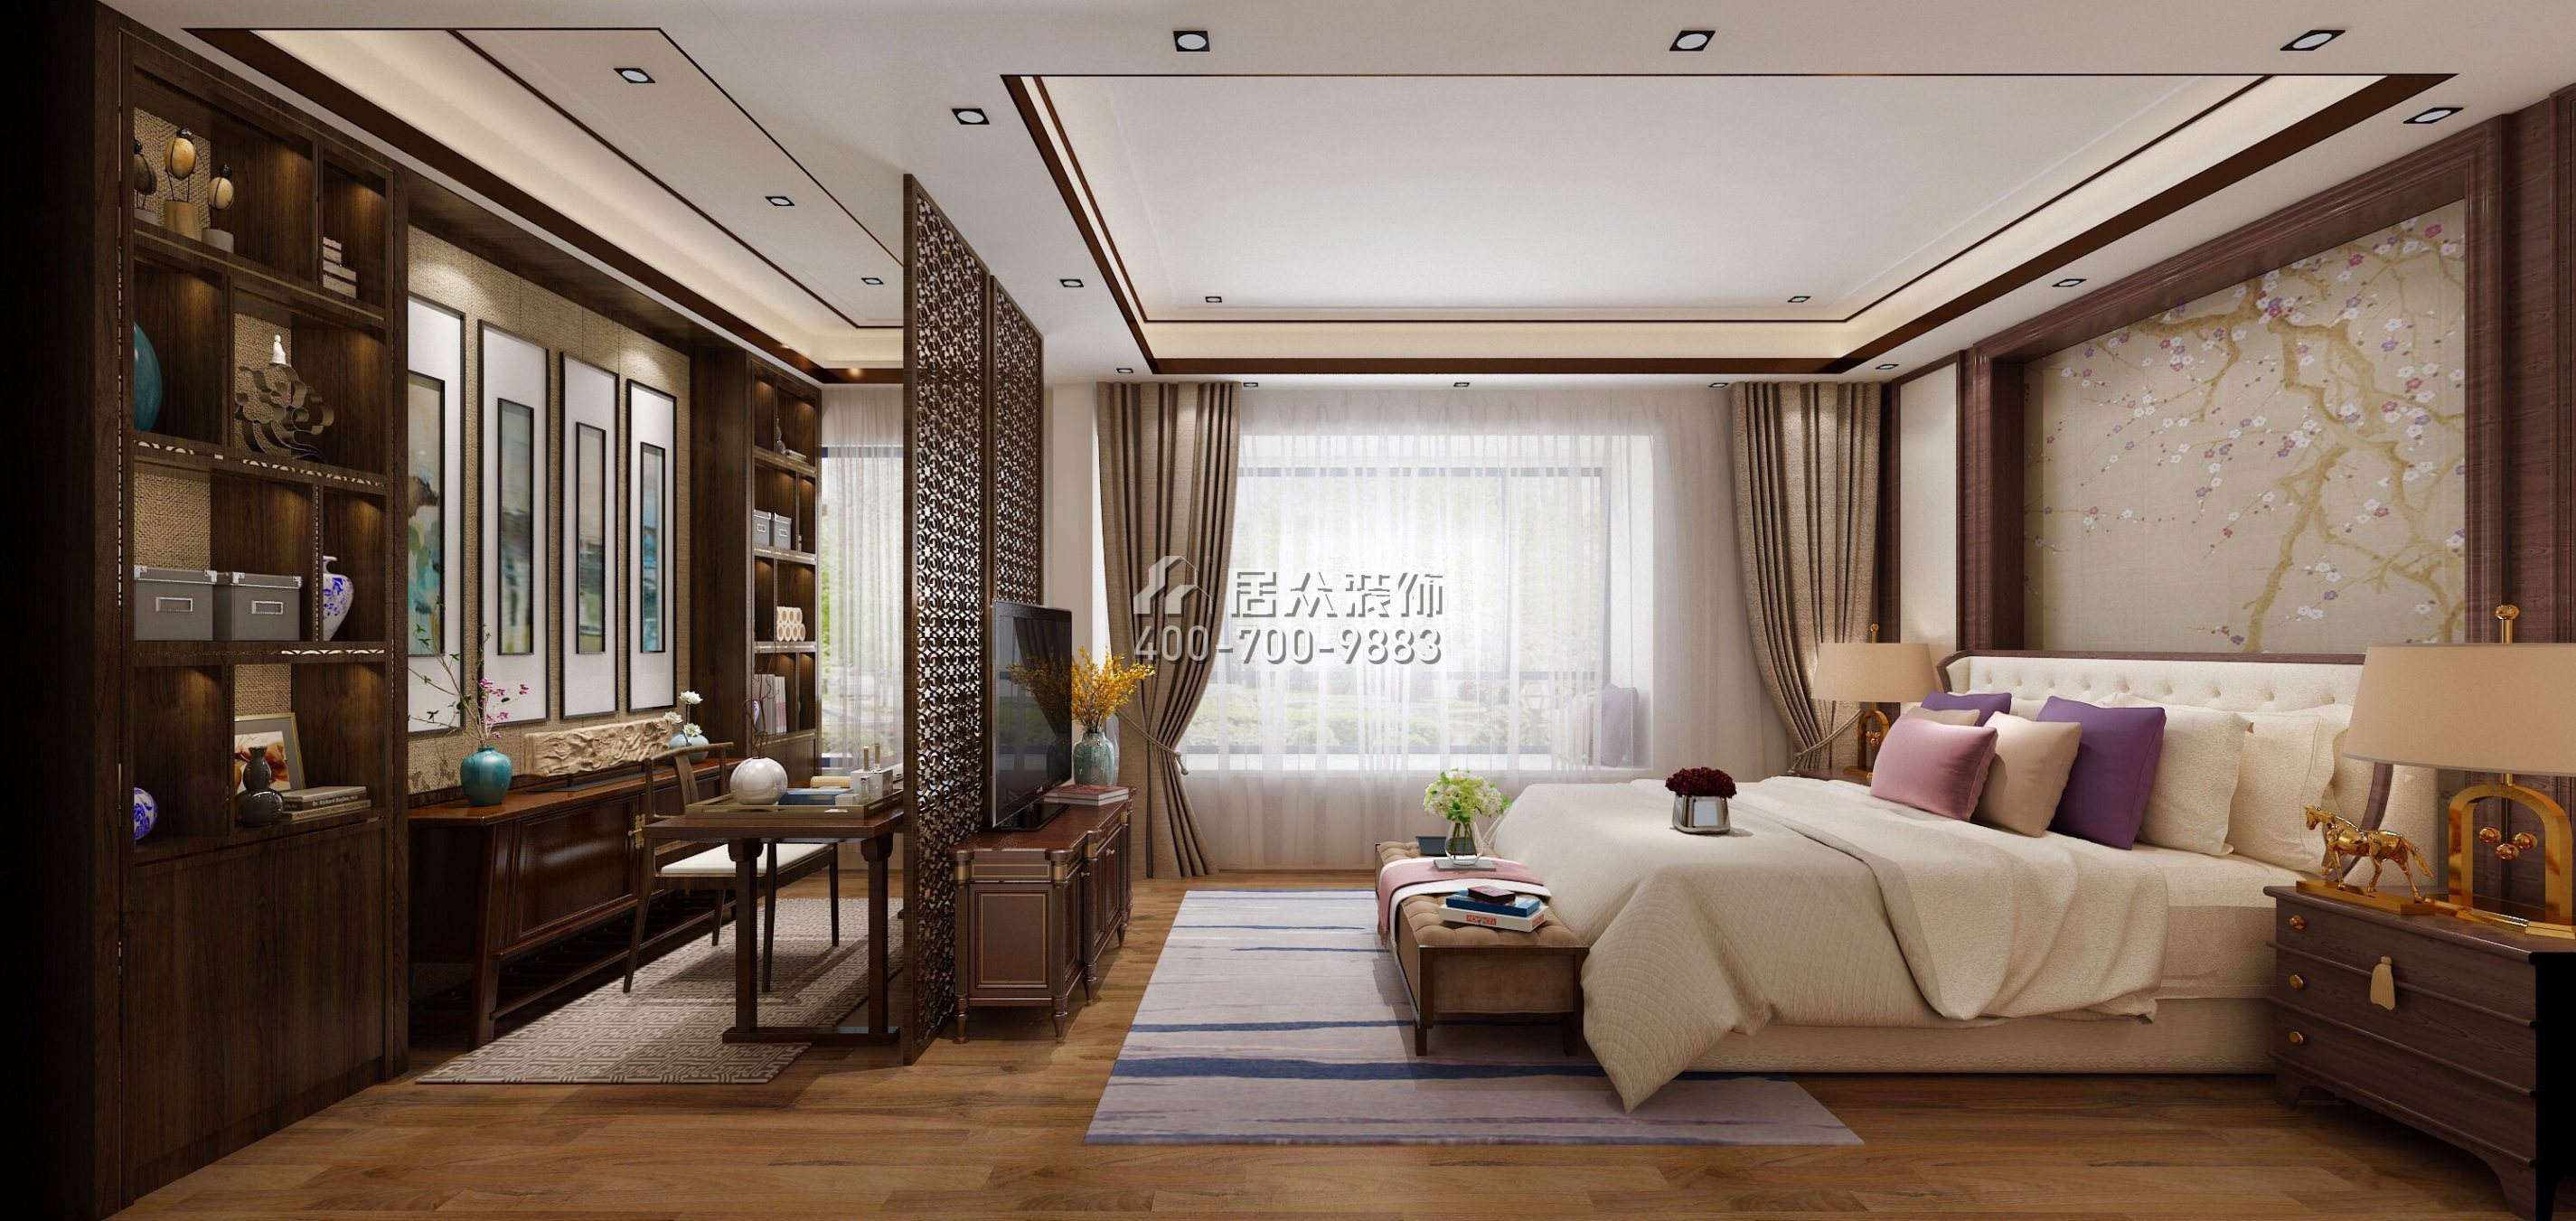 华发山庄370平方米中式风格复式户型卧室装修效果图